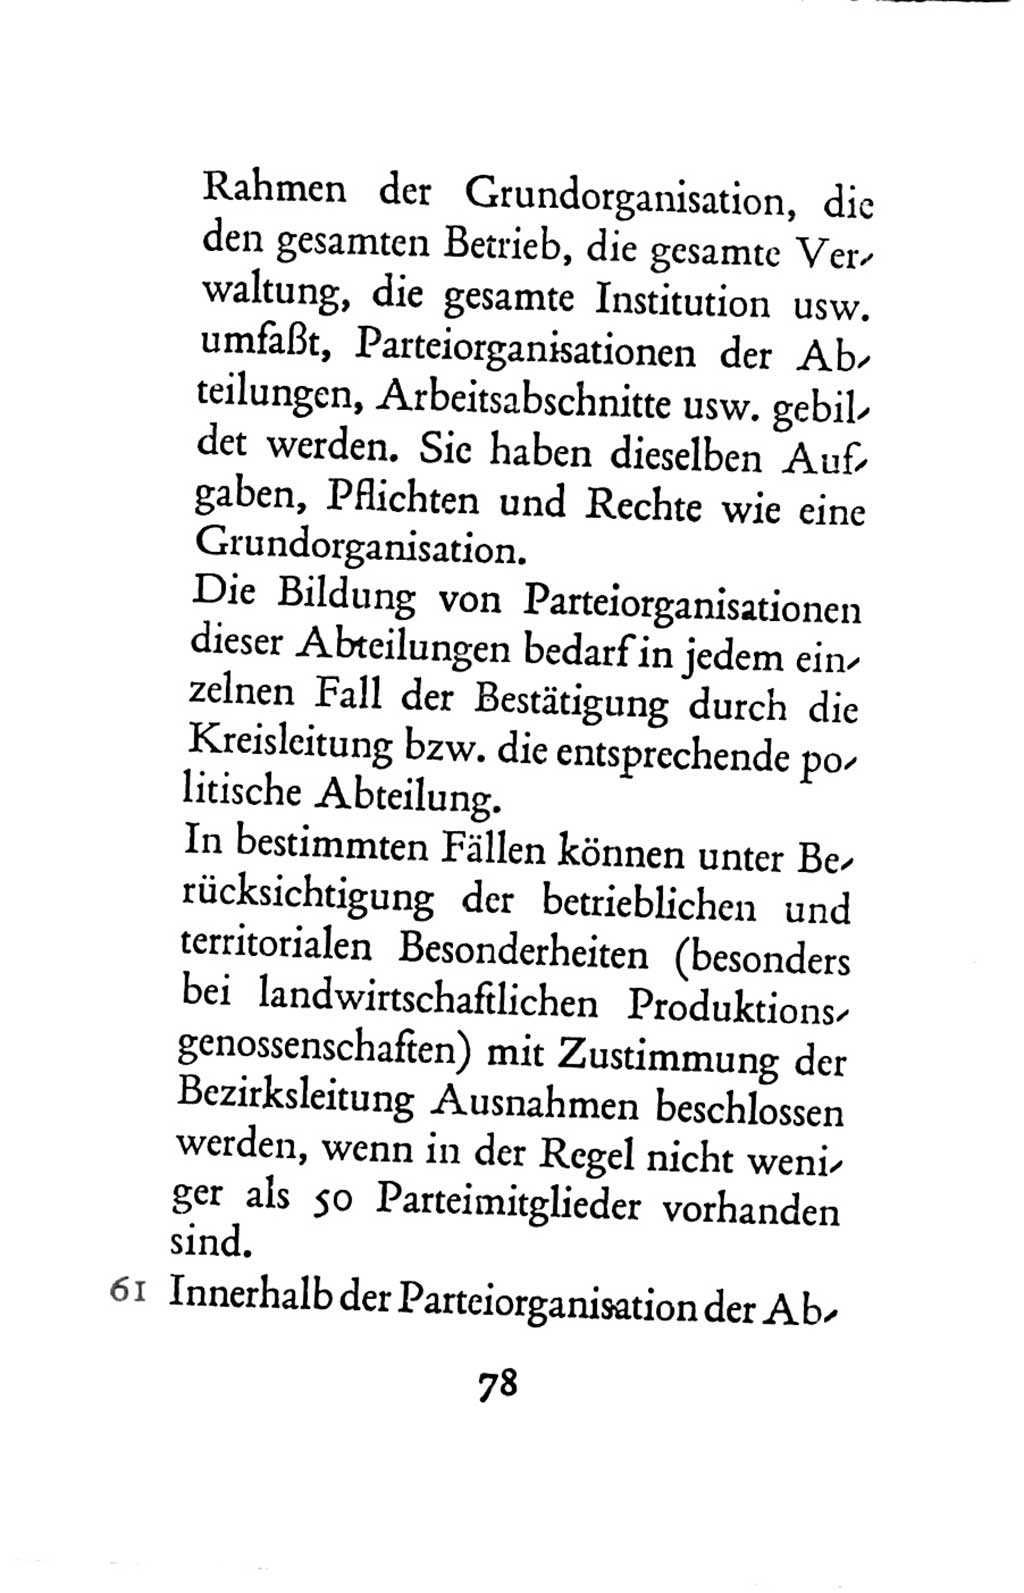 Statut der Sozialistischen Einheitspartei Deutschlands (SED) 1963, Seite 78 (St. SED DDR 1963, S. 78)